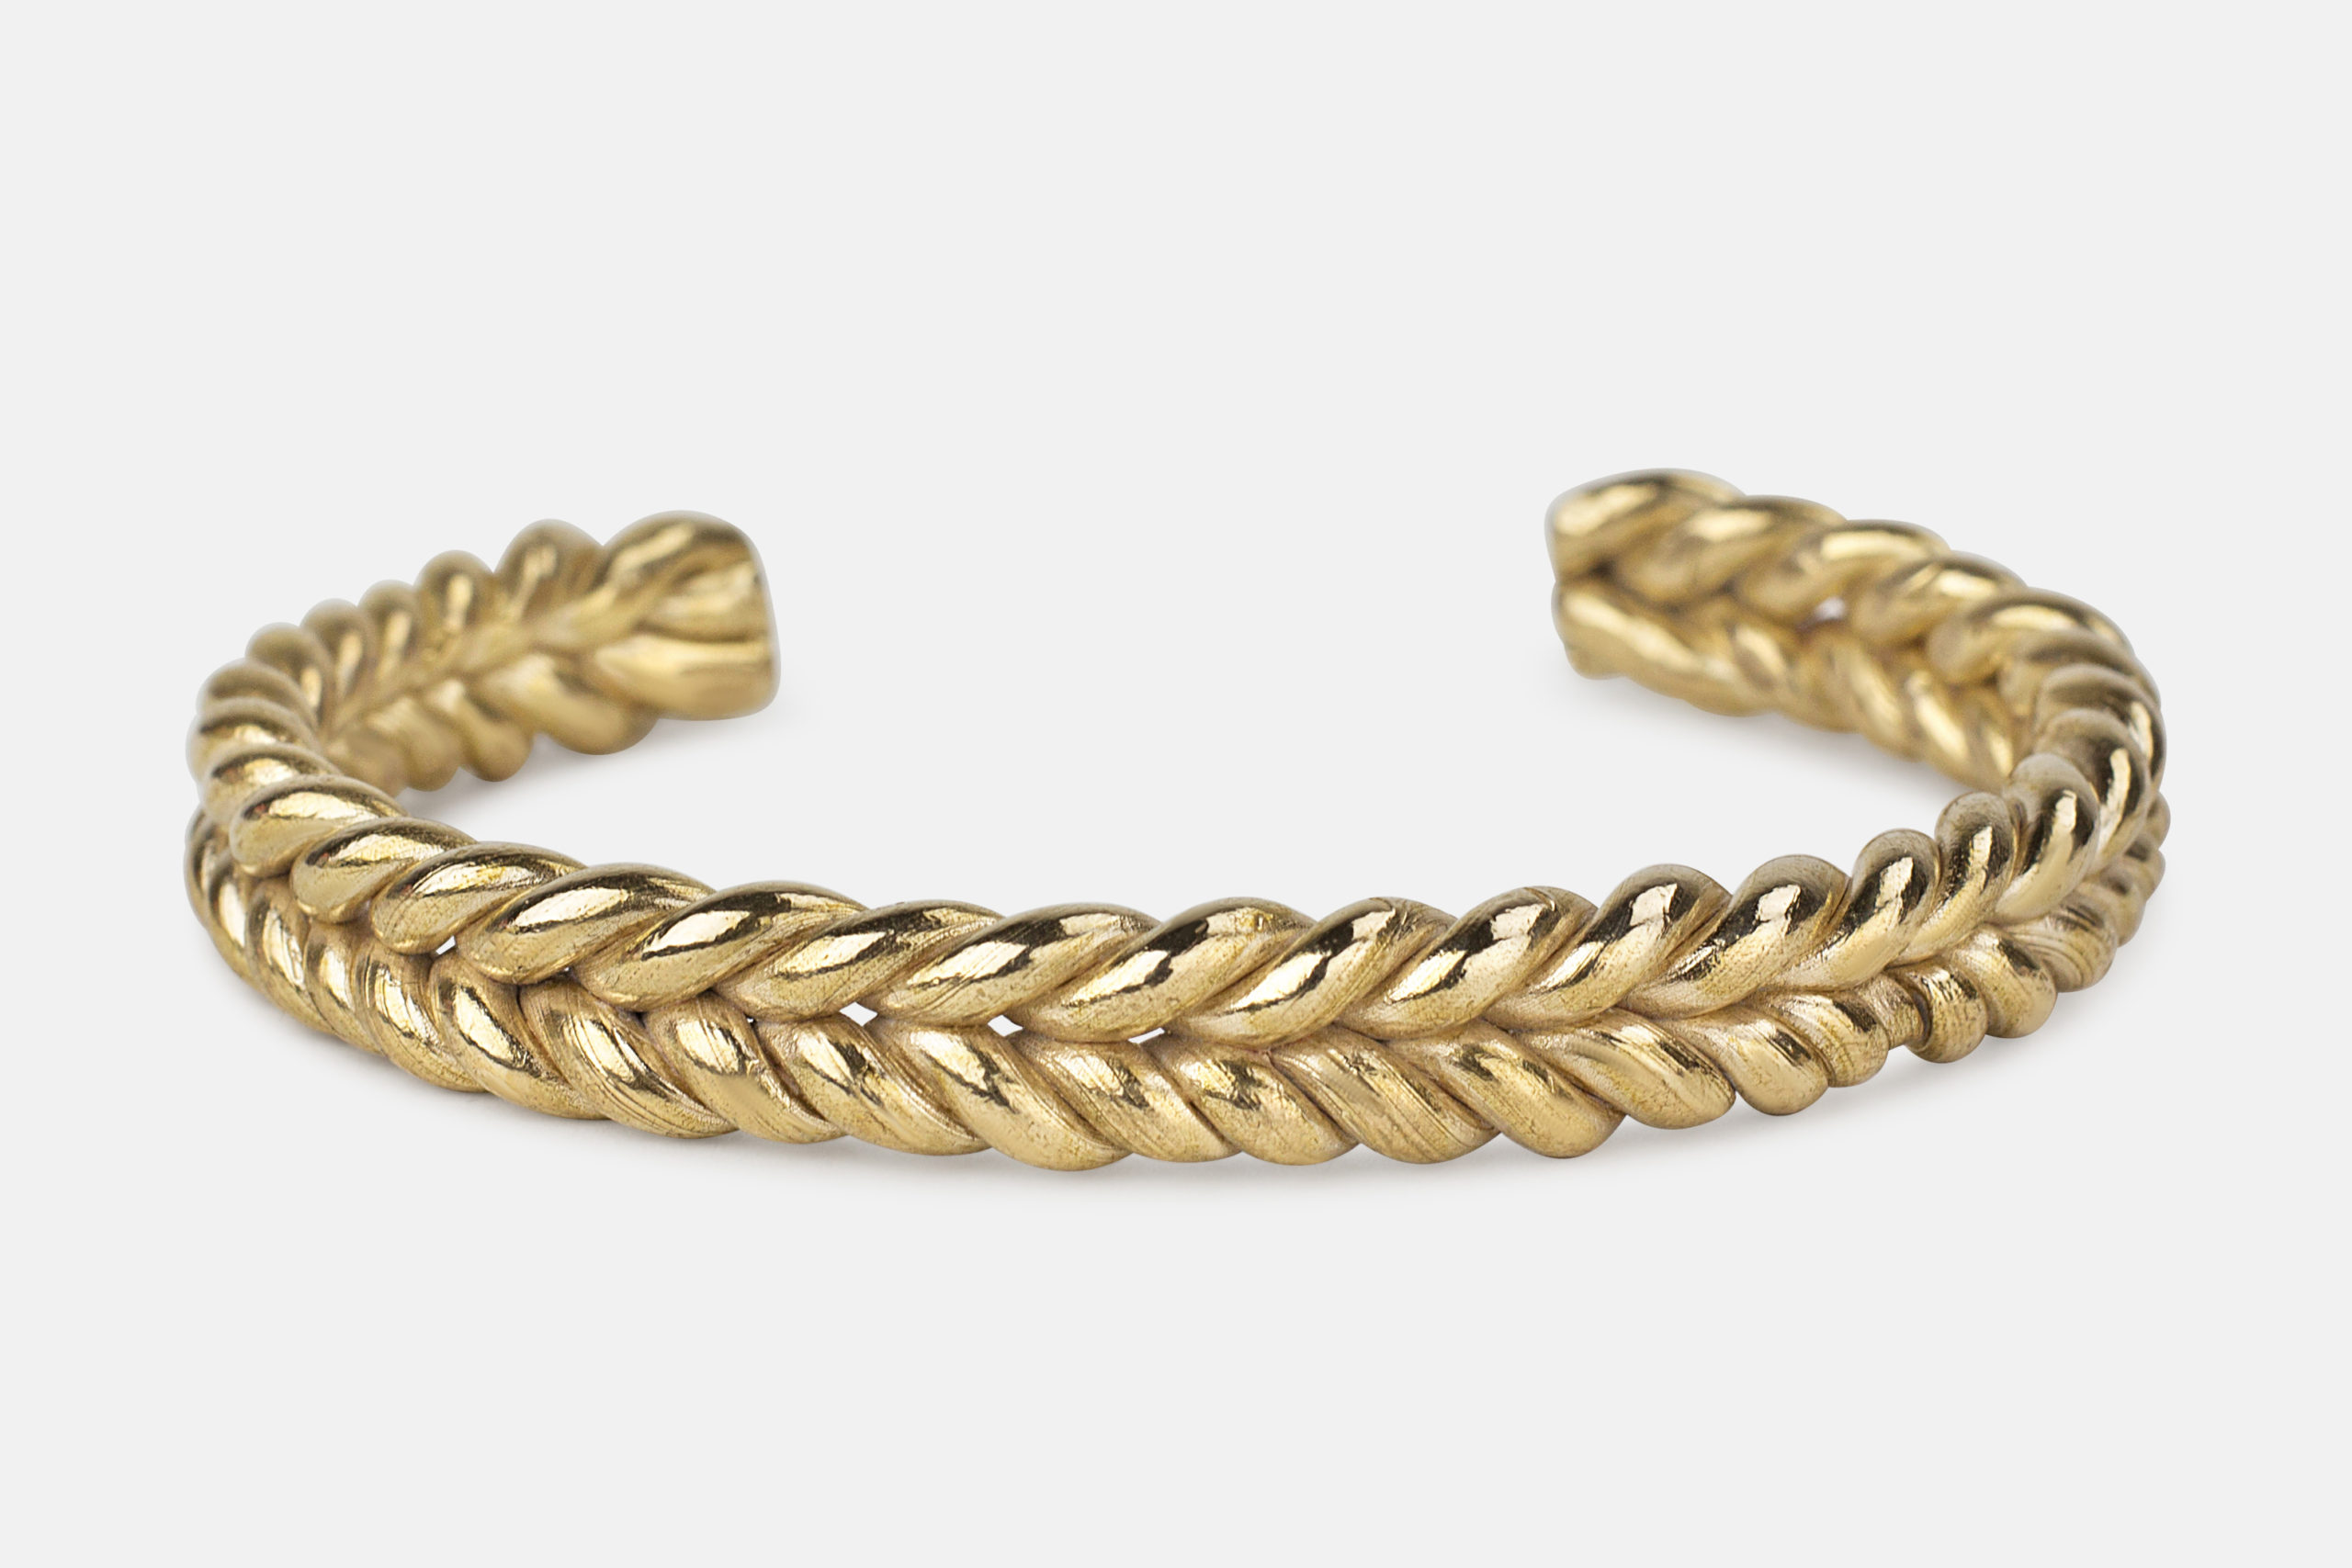 Bronze knit weave bangle bracelet